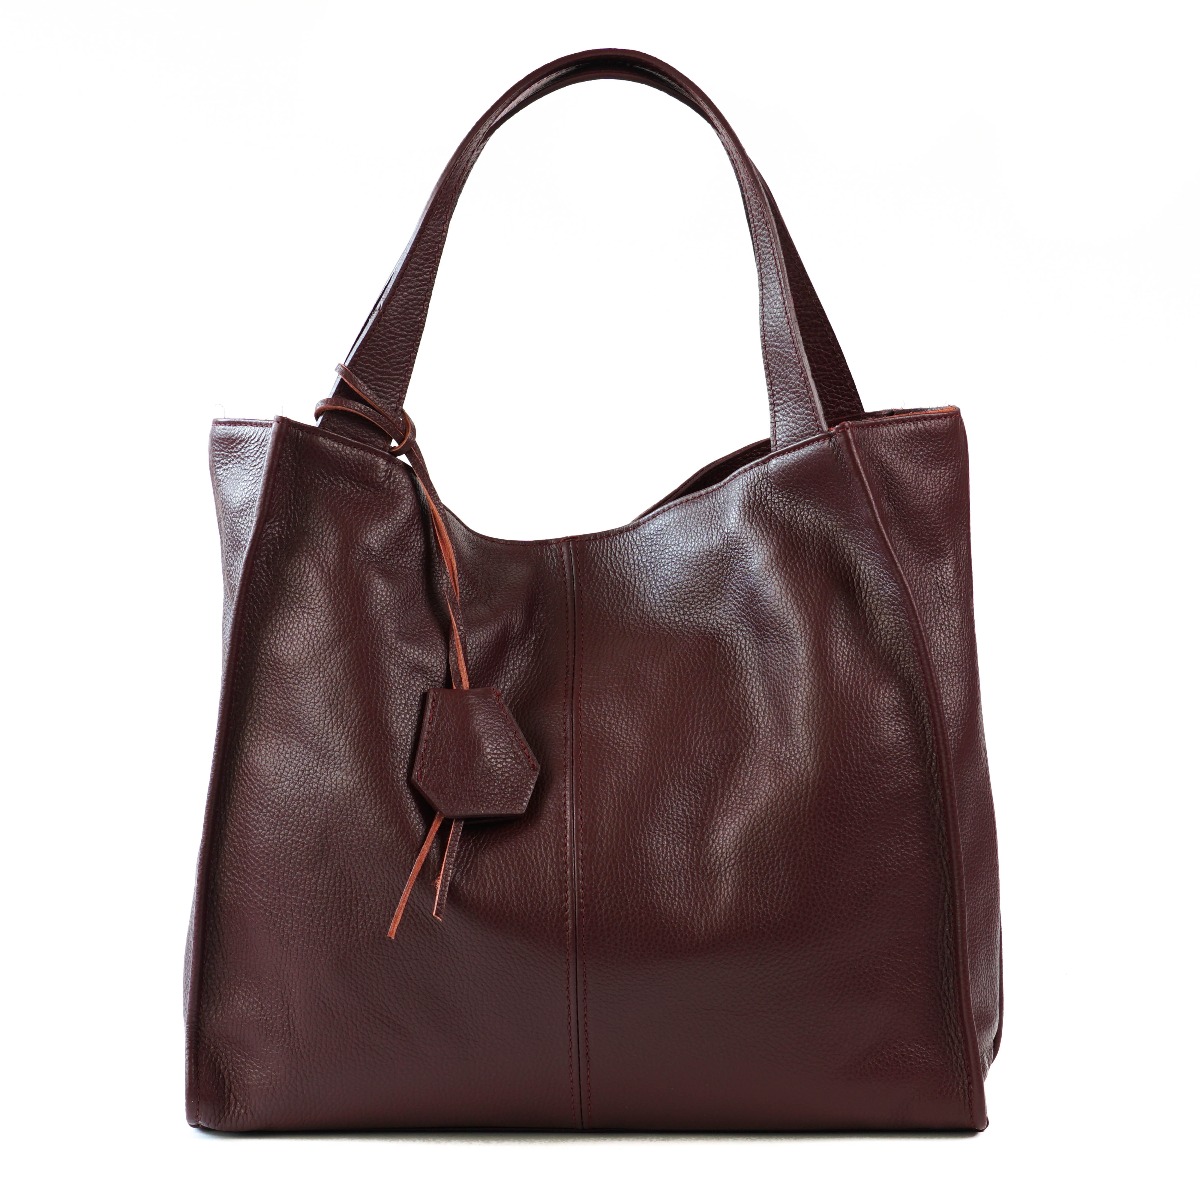 Burgundy soft leather women shoulder bag - big